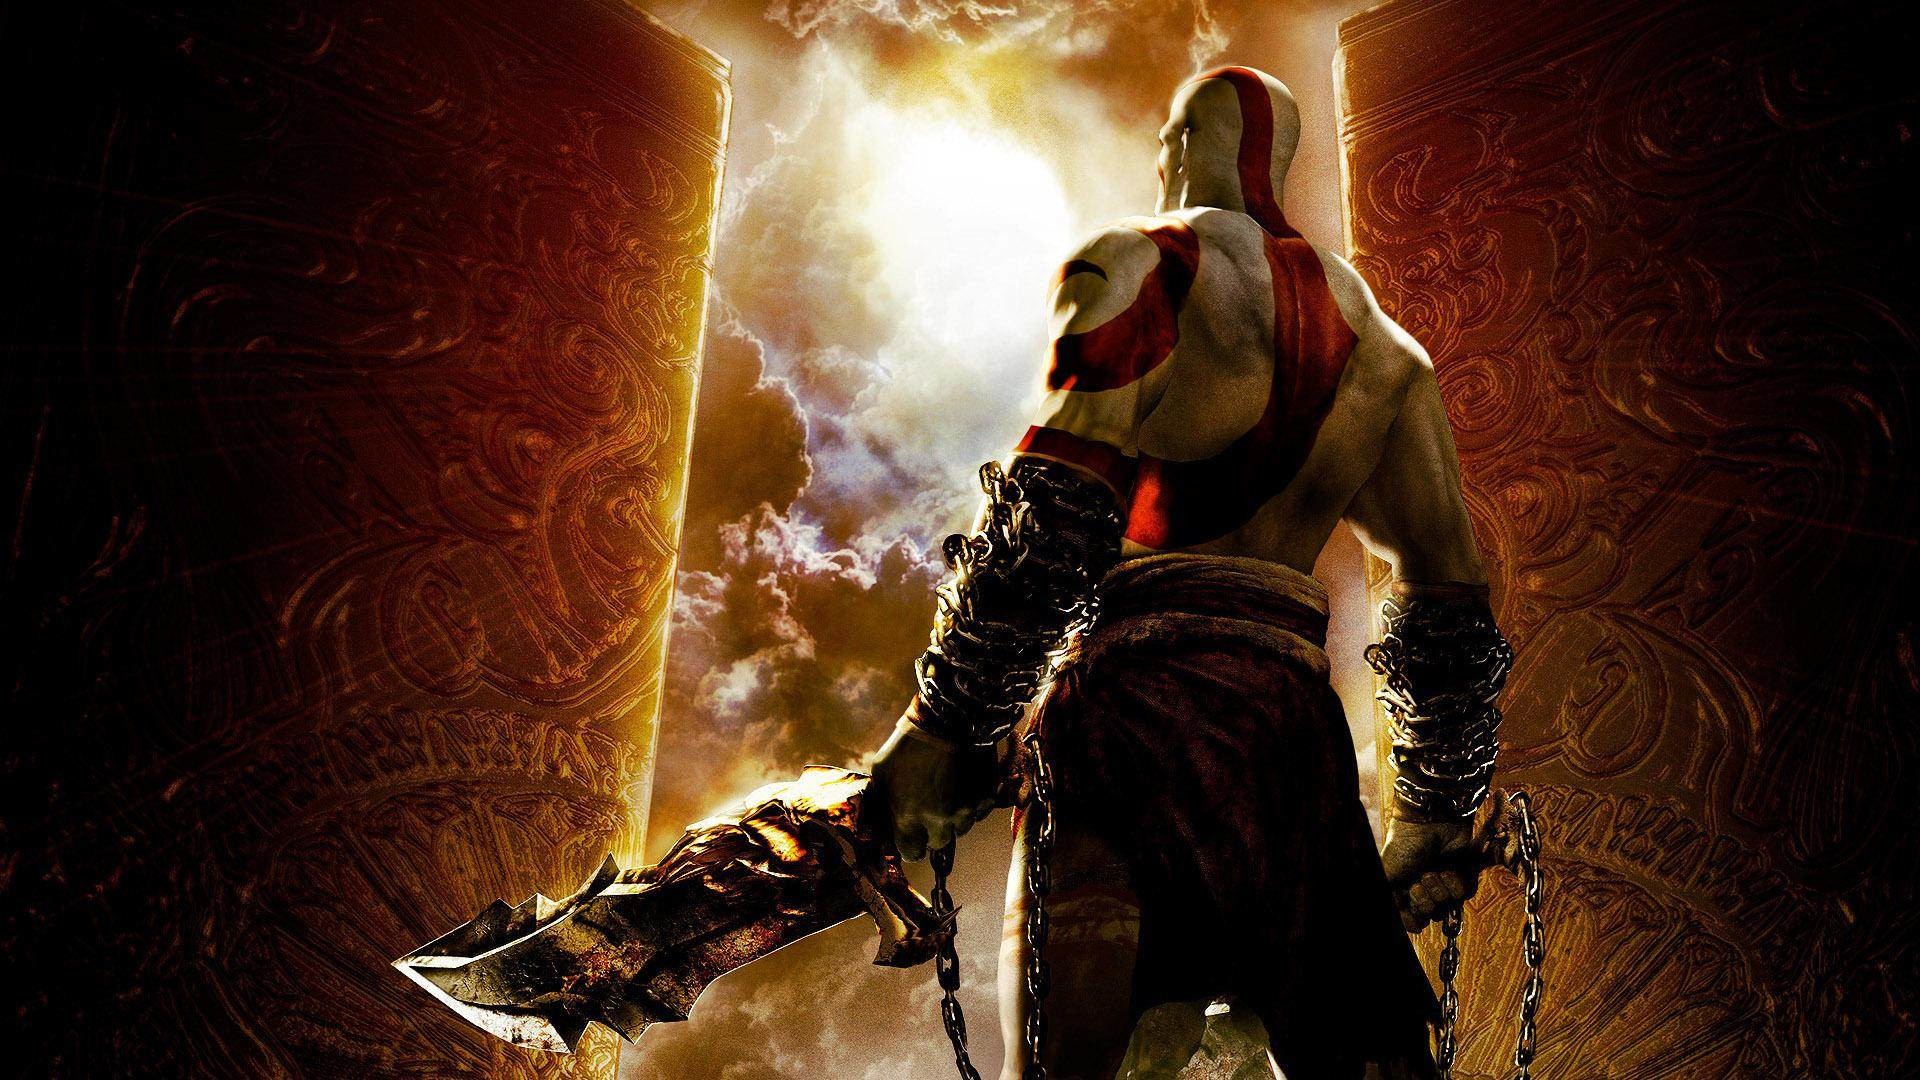 kratos fondo de pantalla,juego de acción y aventura,juego de pc,cg artwork,personaje de ficción,película